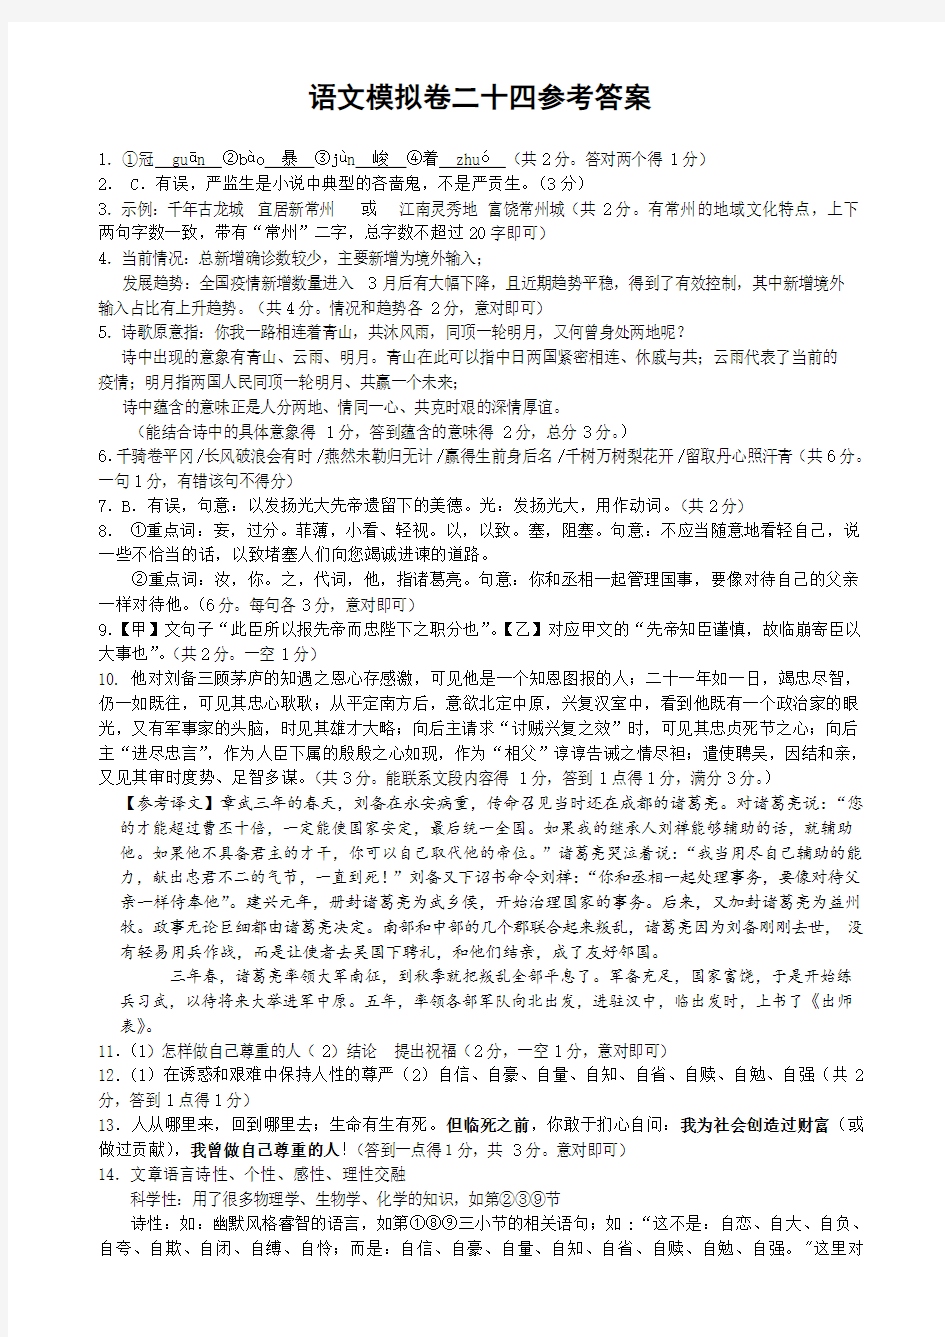 语文模拟卷24参考答案及评分标准(刘蒋巍汇编)